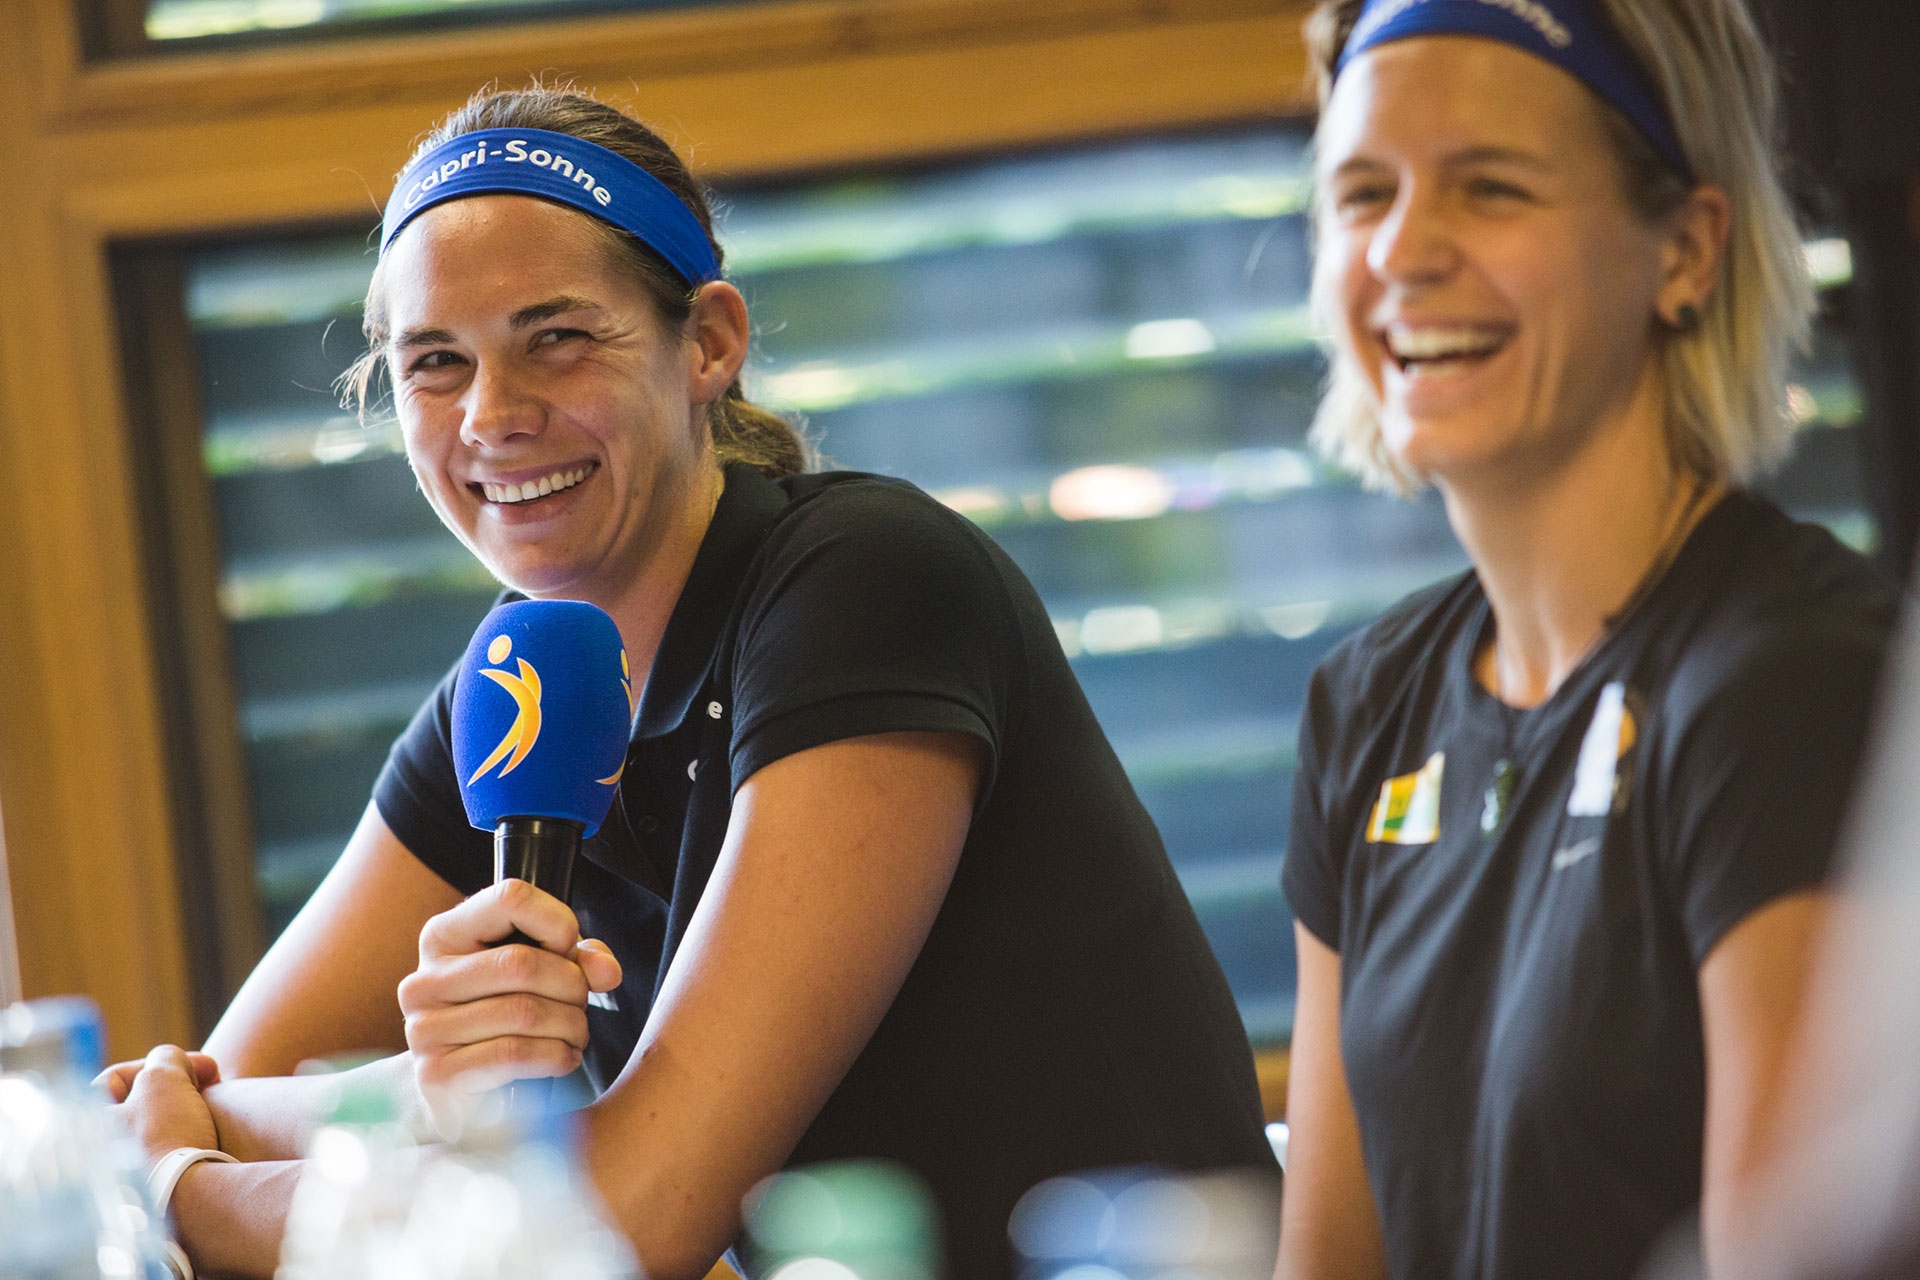 Leichtes Spiel für die amtierenden Europameisterinnen Kira Walkenhorst und Laura Ludwig? Sie sind bei ihrem Heimspiel in Hamburg top gesetzt. Photocredit: Mike Ranz.